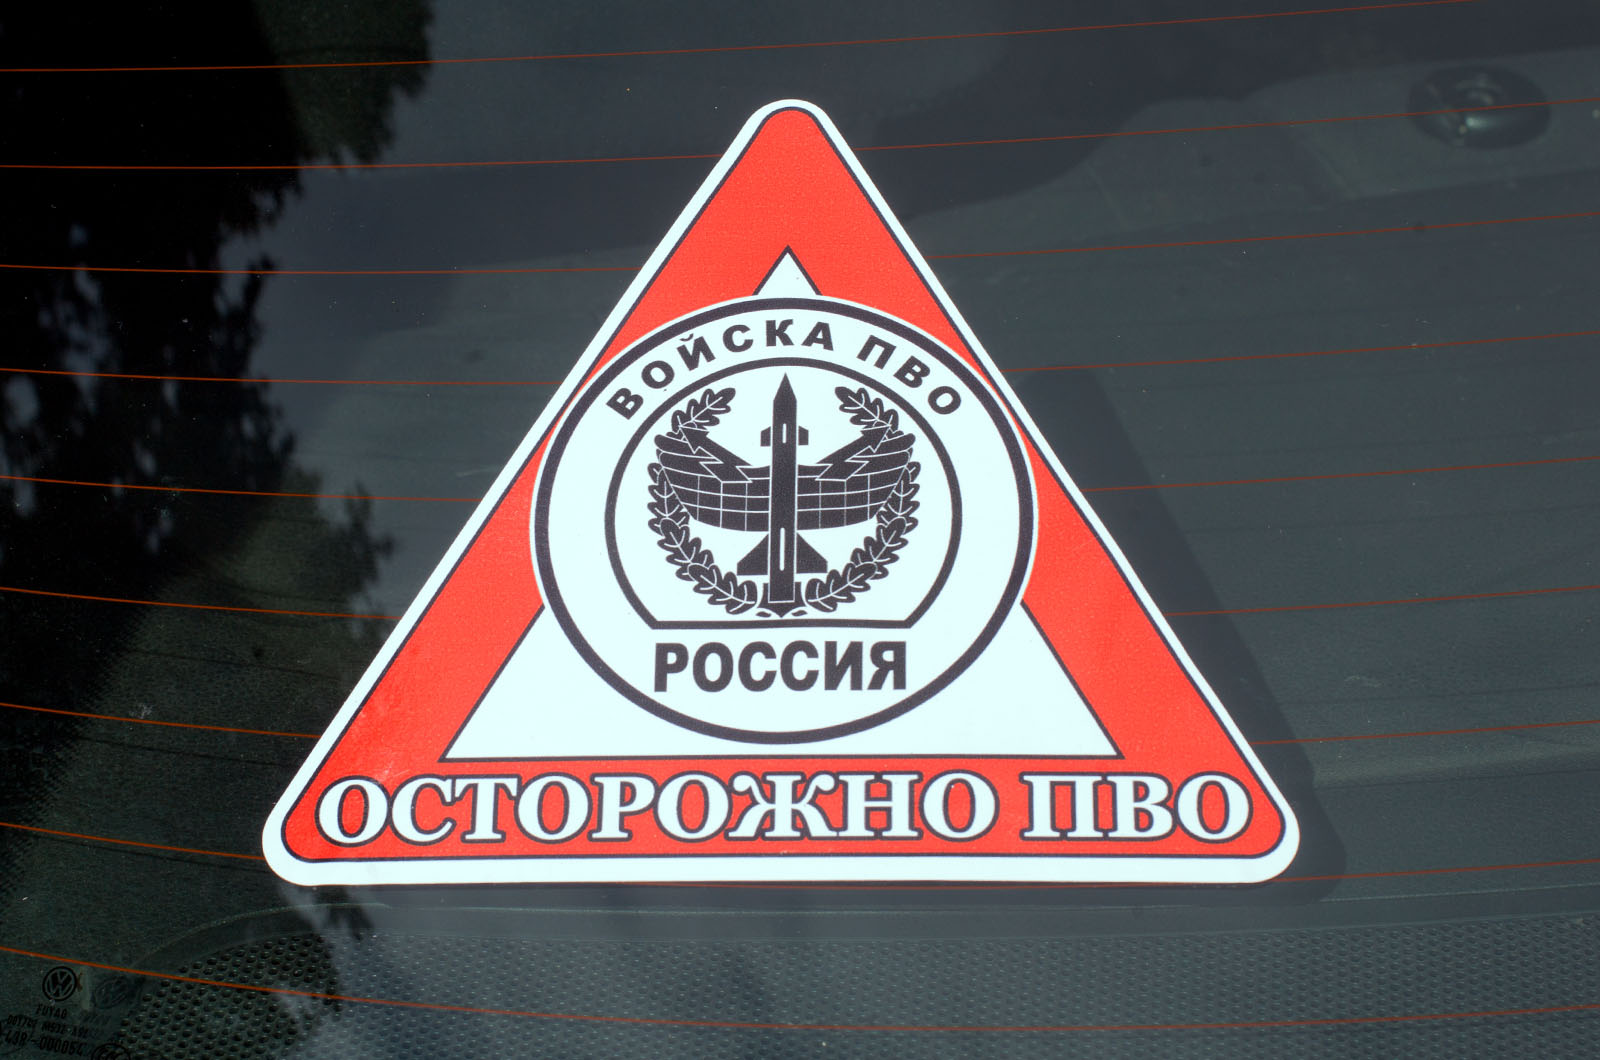 Наклейка автомобильная «Осторожно ПВО» 